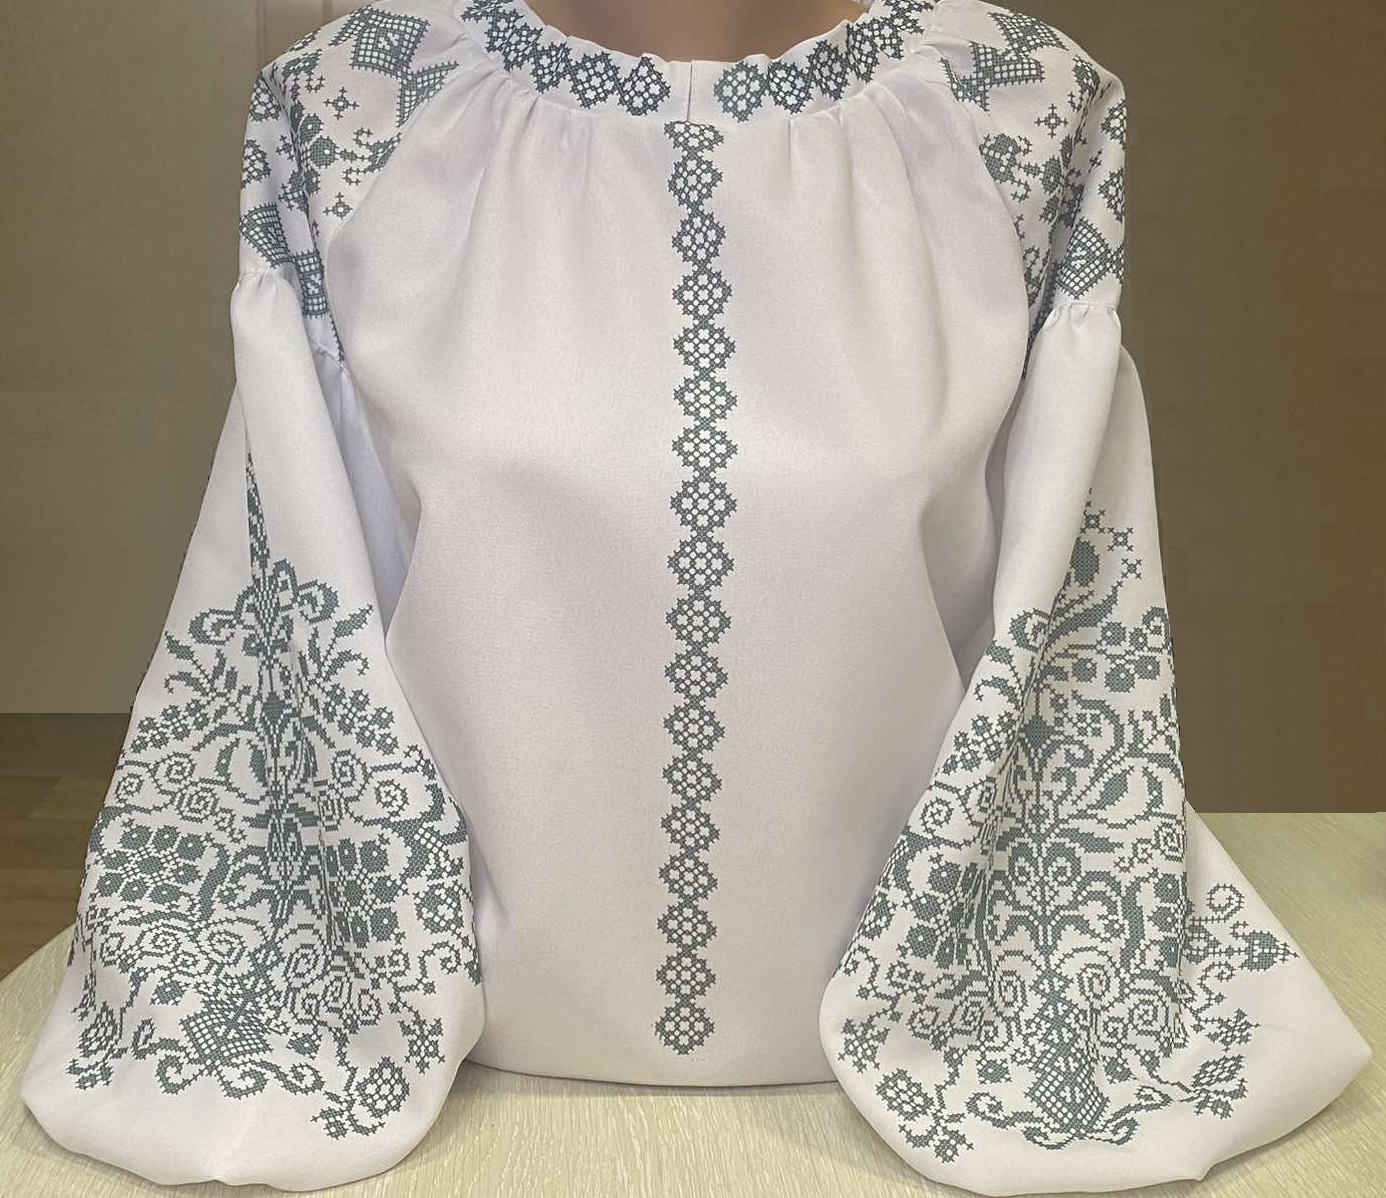 Пошита жіноча блуза для вишивання бісером або нитками ПЖС-175 (БОХО) чорна